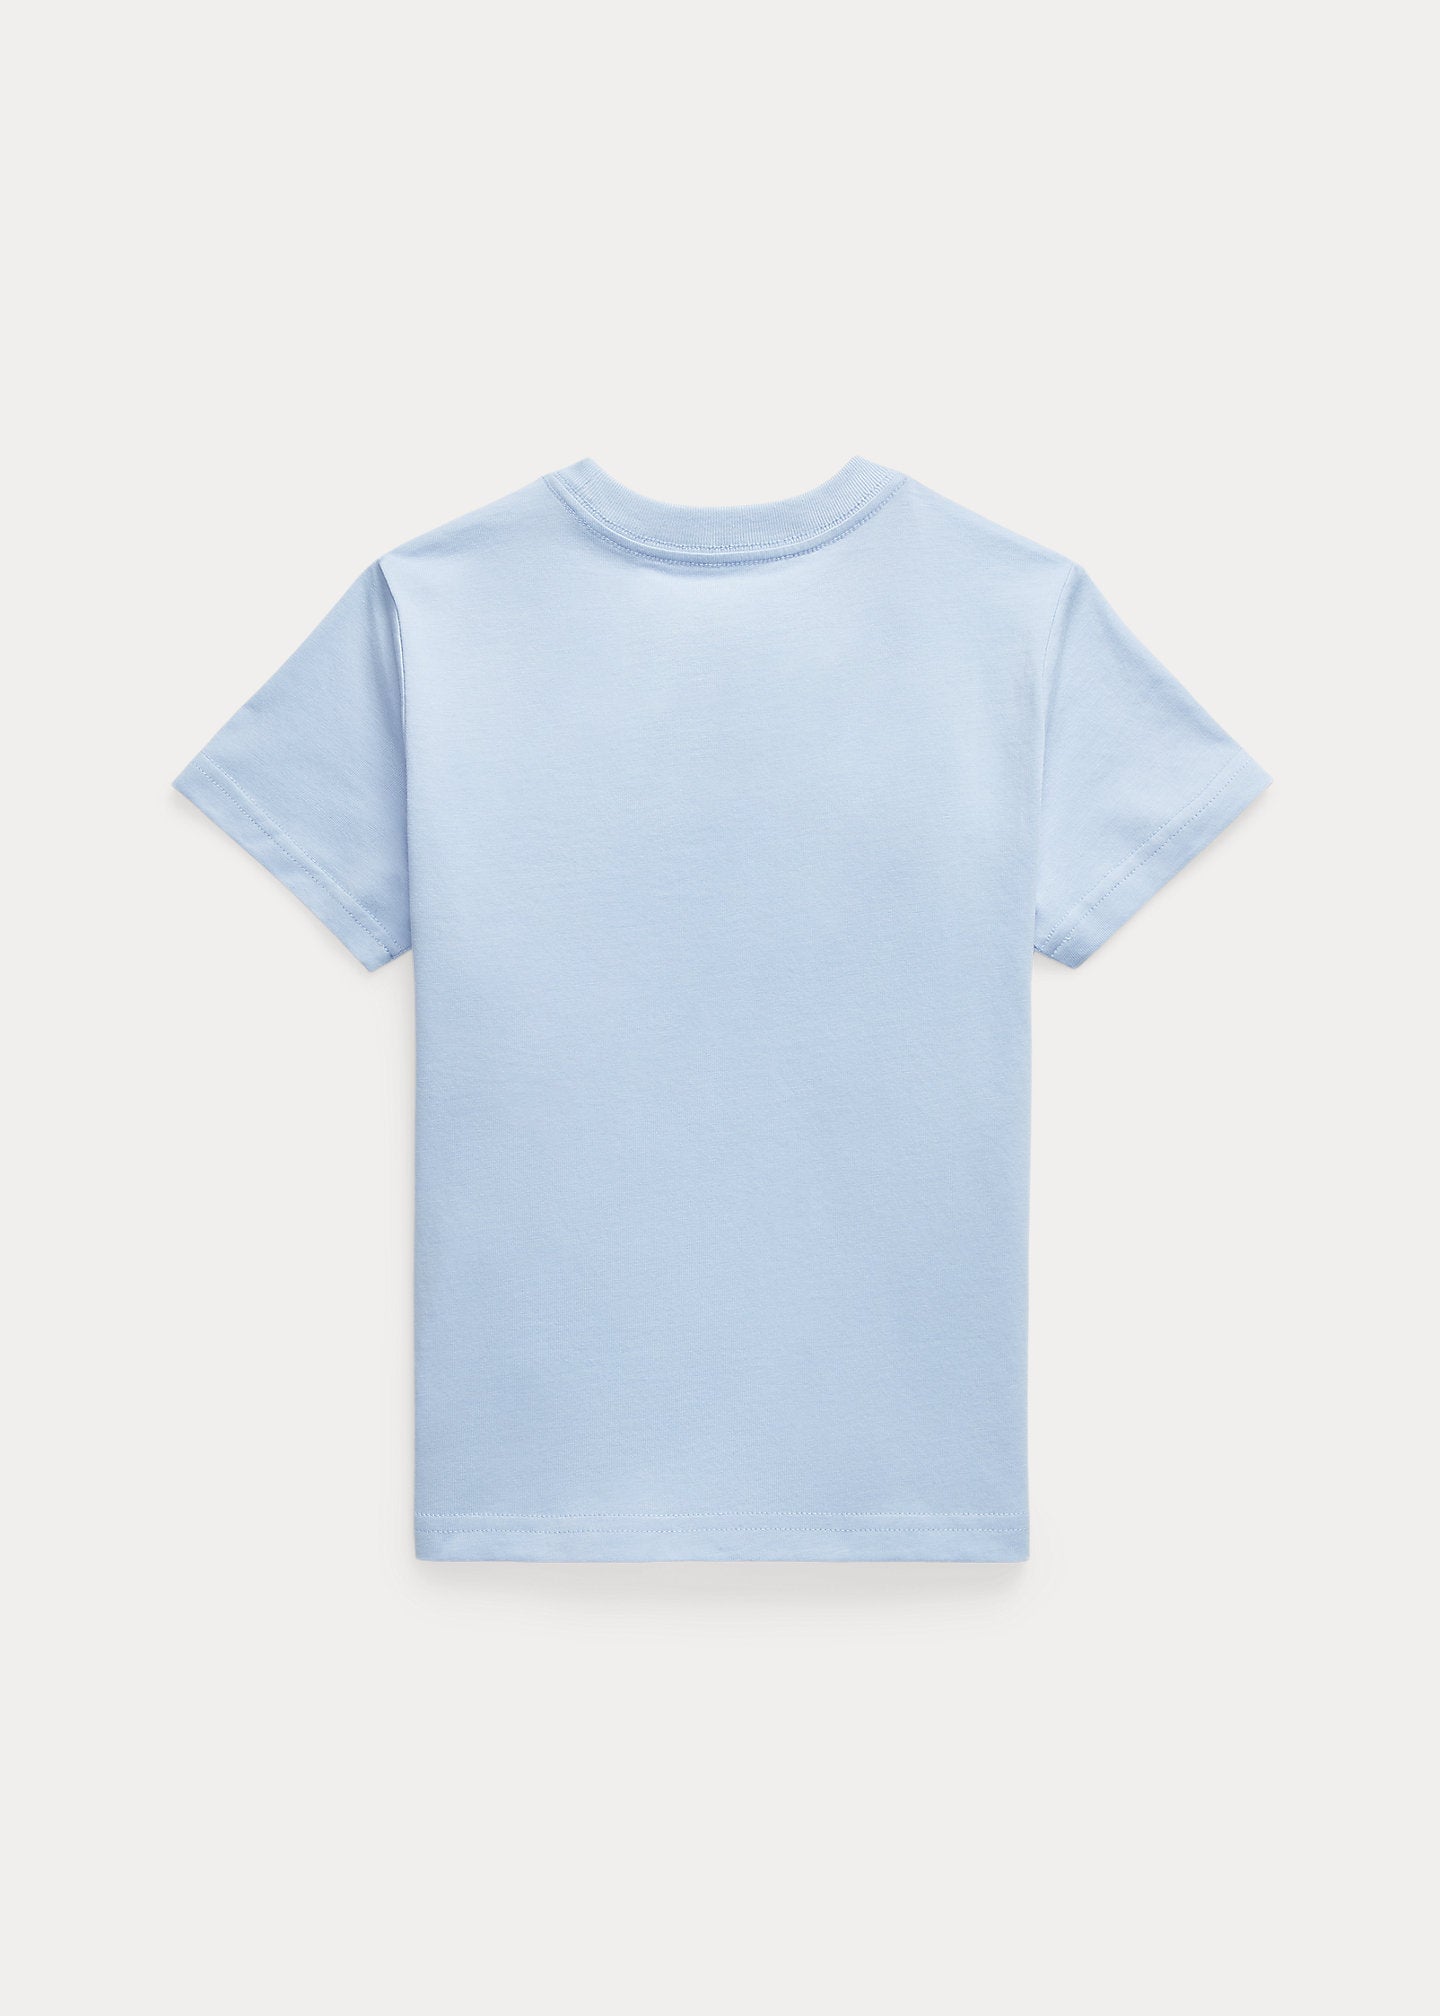 Ralph Lauren, T-shirts, Ralph Lauren - Crew neck T-shirt, pale blue